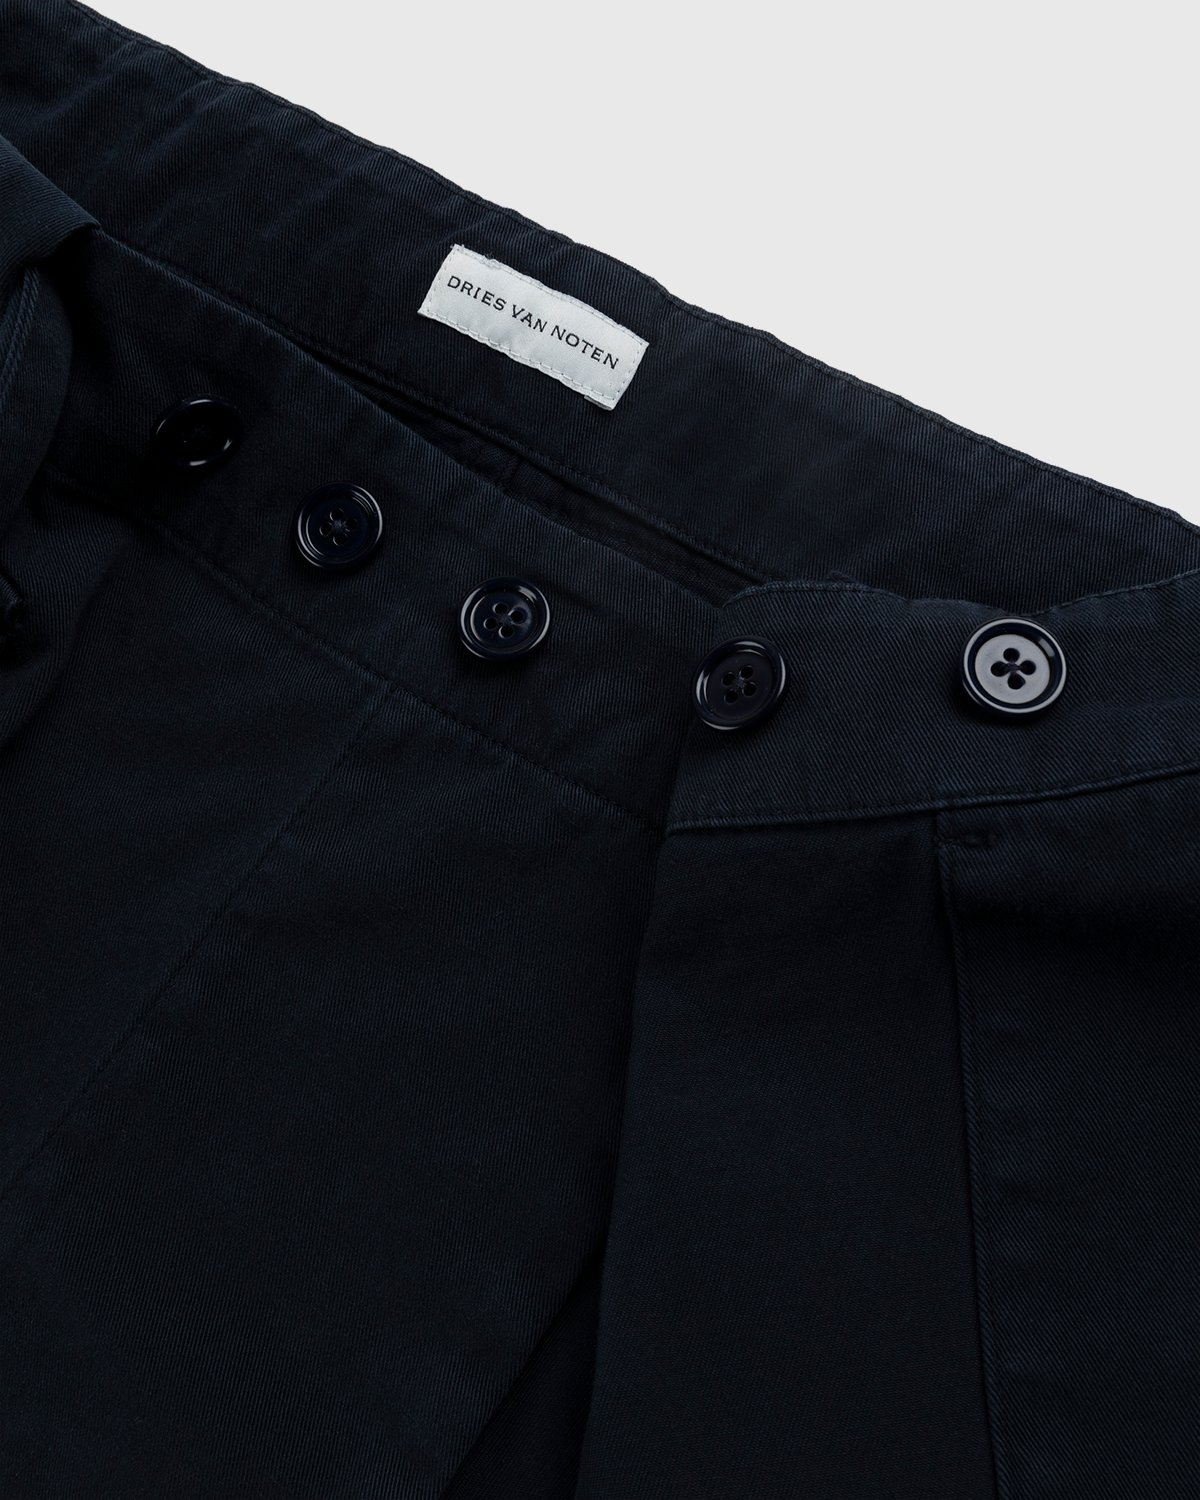 Dries van Noten - Parren Belted Wrap Navy - Clothing - Blue - Image 6